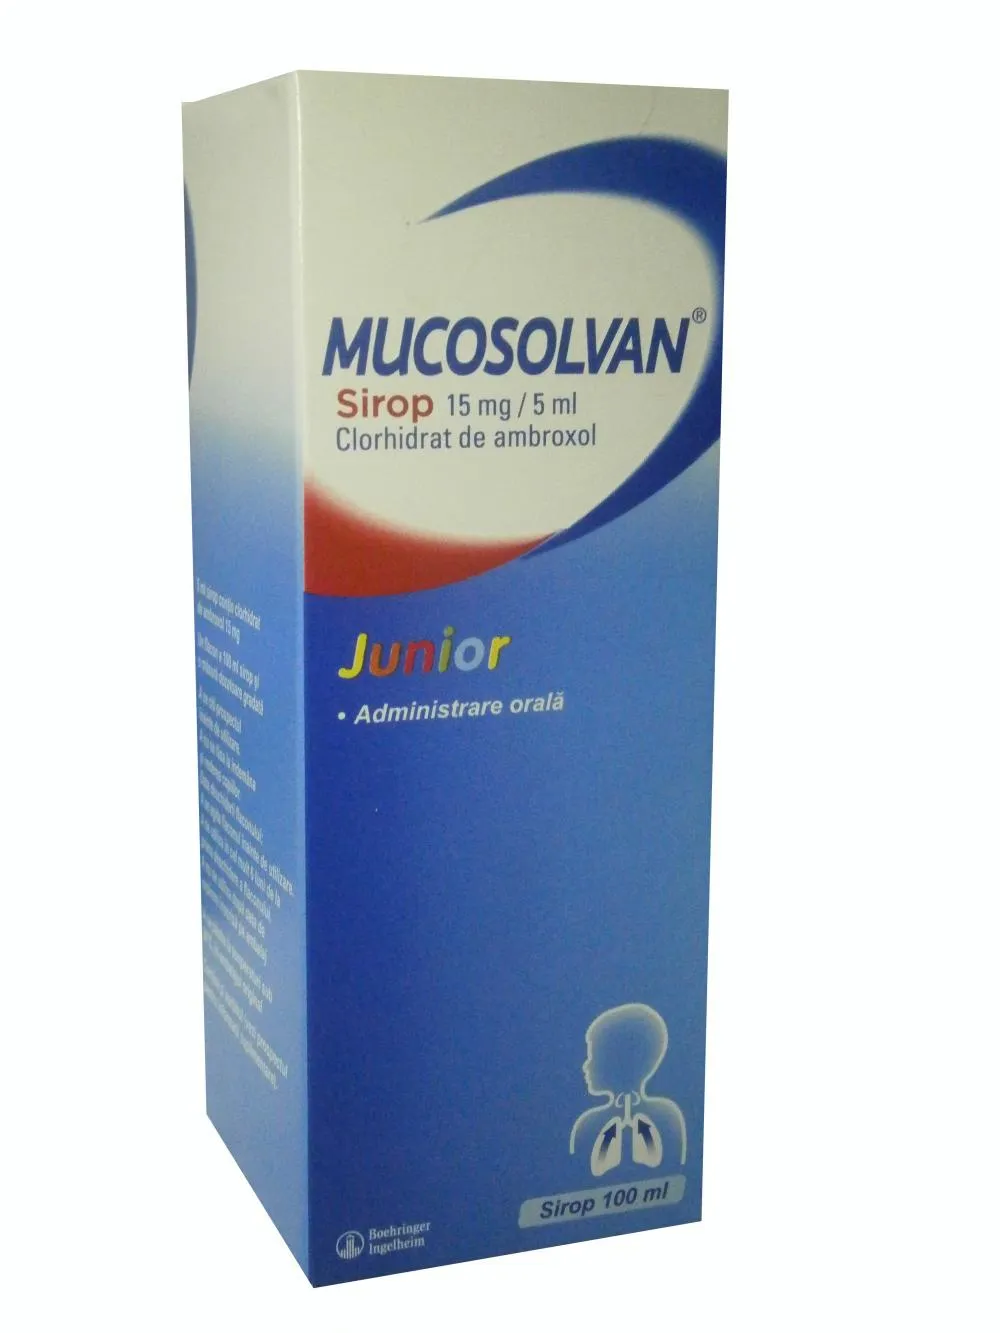 Mucosolvan Junior Sirop 15 mg/5 ml 100 ml